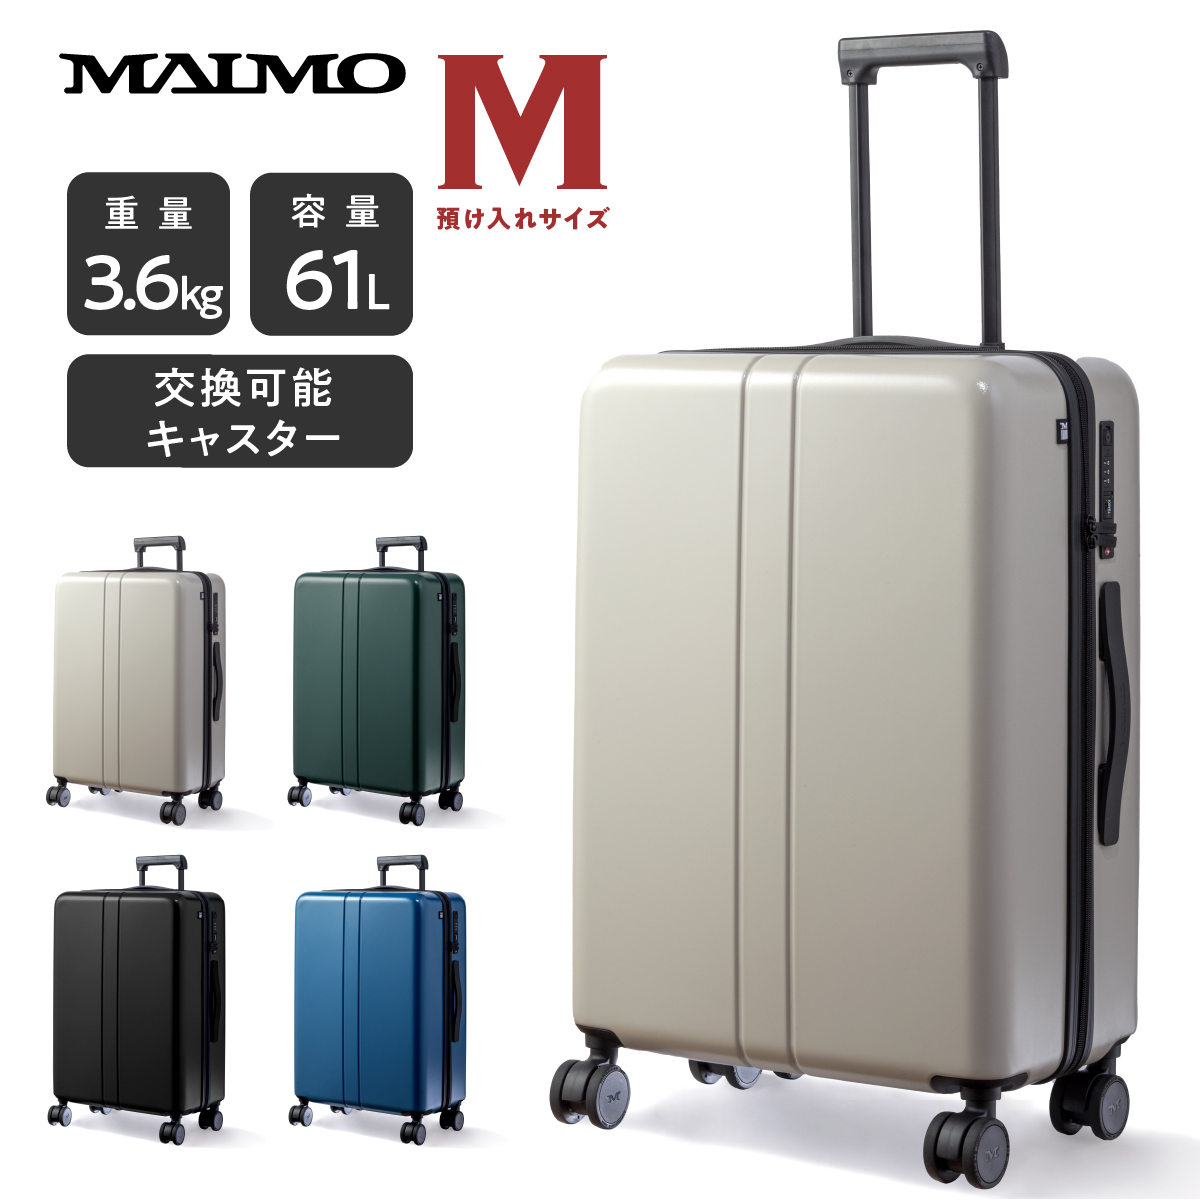 スーツケース キャリーケース MAIMO公式 キャリーバッグ Mサイズ 日本企業 超軽量 大容量 静音 スーツ ケース ダブルキャスター  最新セキュリティー :M2ND-M-01:MAIMOブランド直営店 通販 